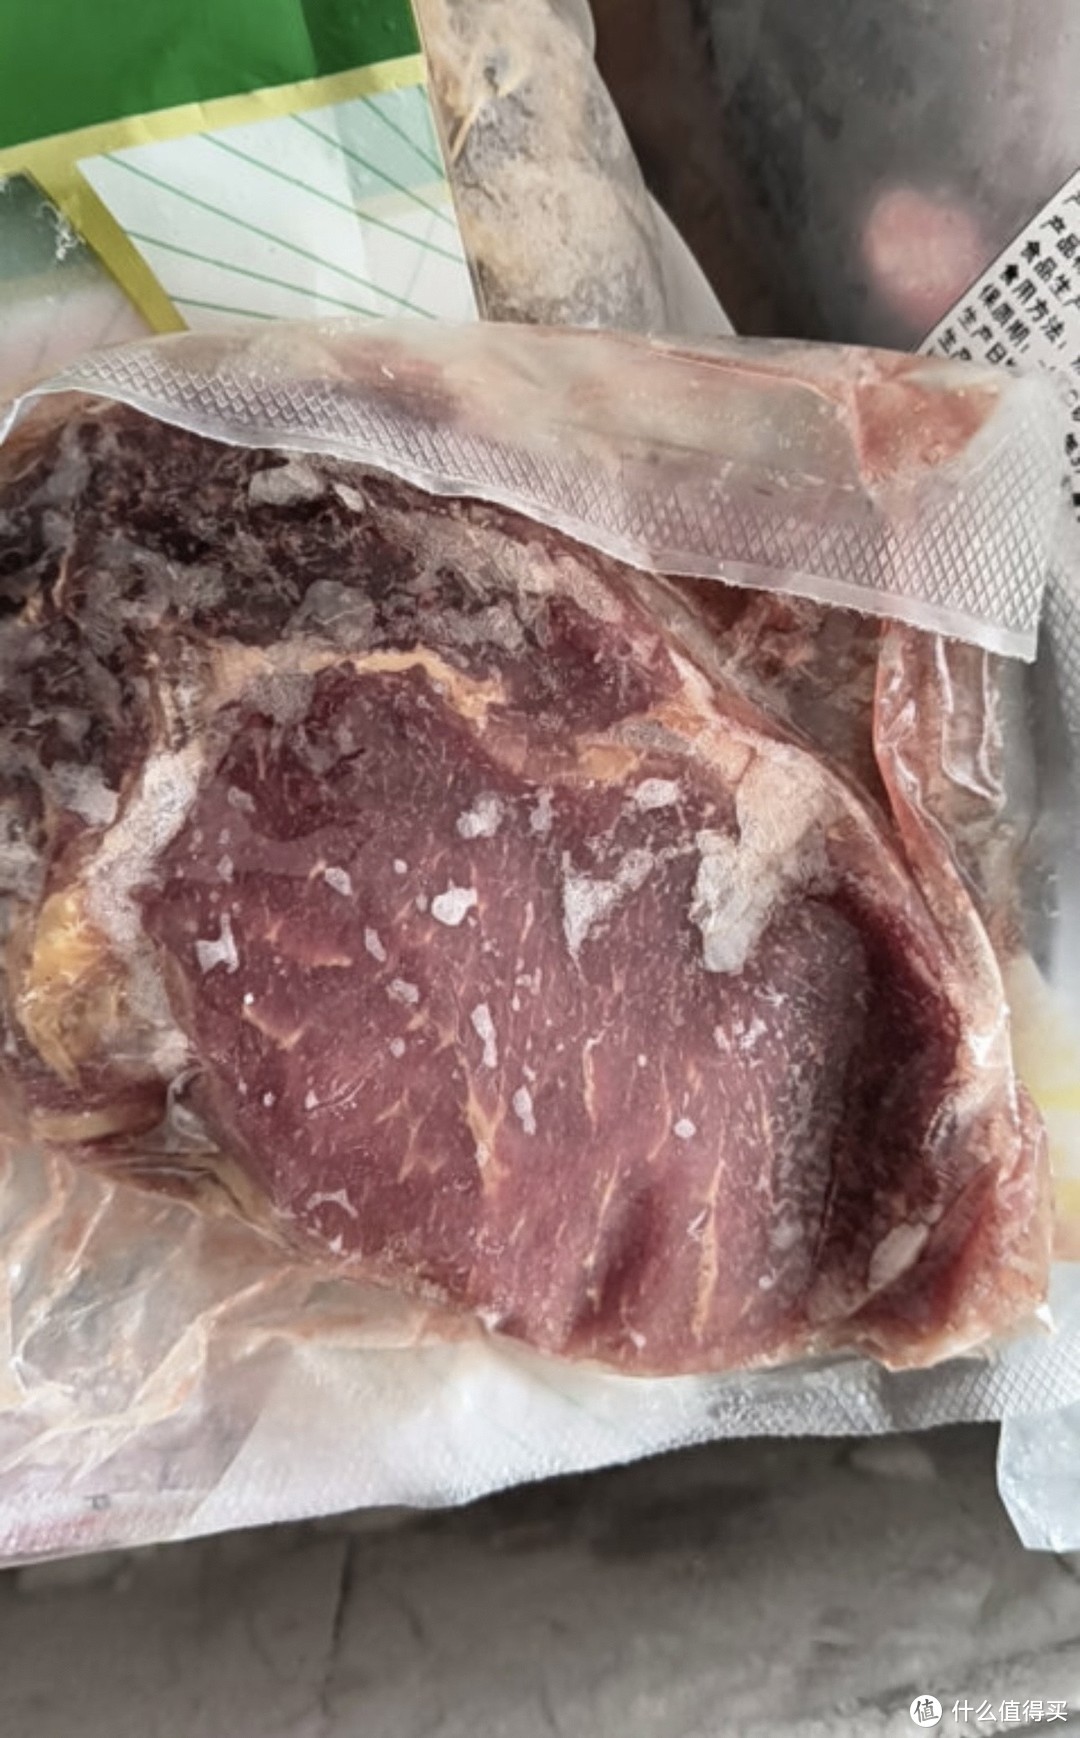 ￼￼大希地盒装整切调理眼肉牛排含酱包共700g（5片）儿童 牛扒 冷冻牛肉￼￼